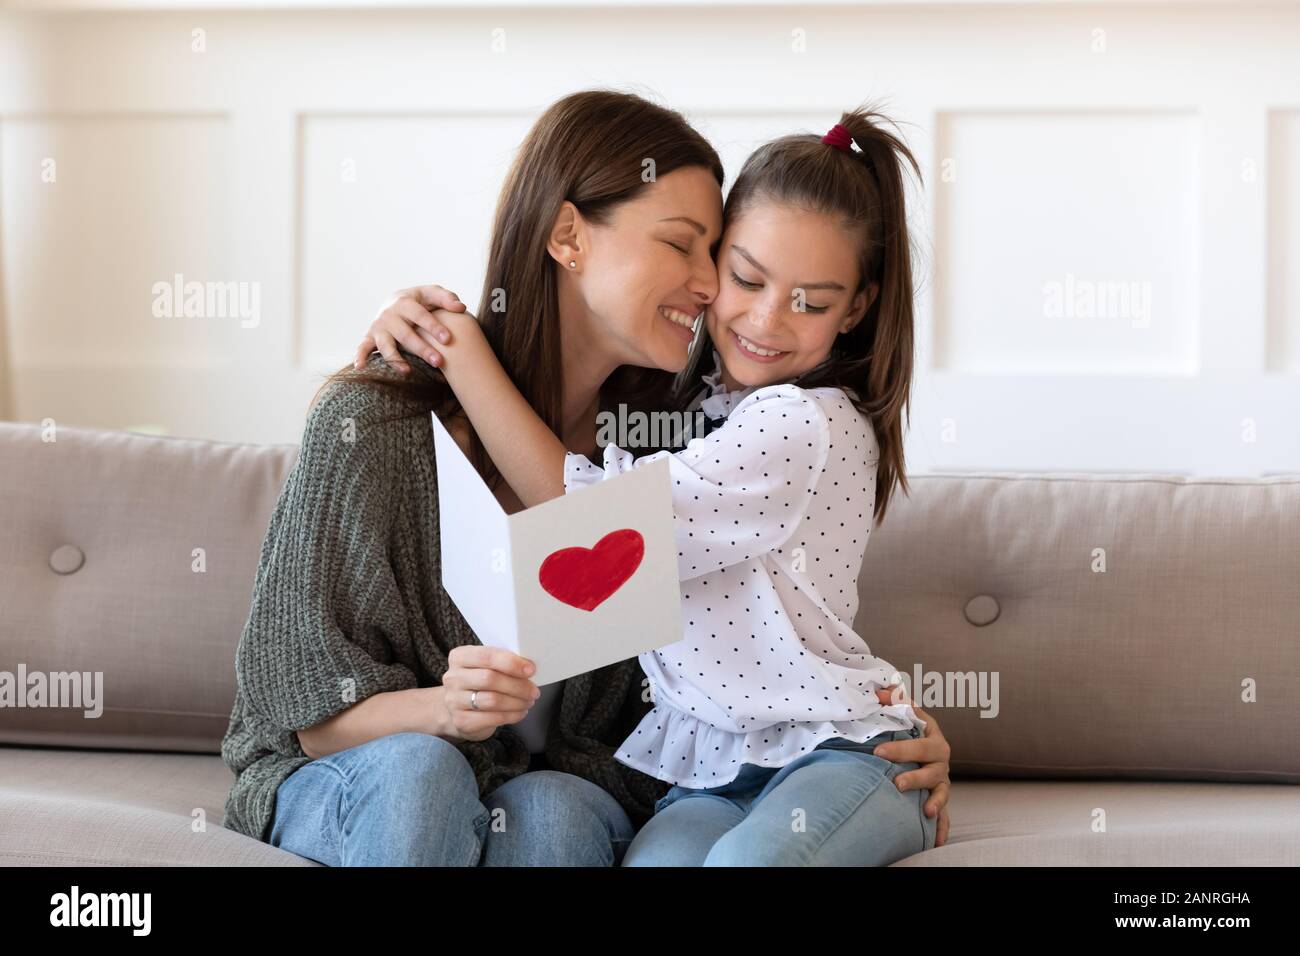 Maman heureuse hug fille remercie pour anniversaire surprise Photo Stock -  Alamy